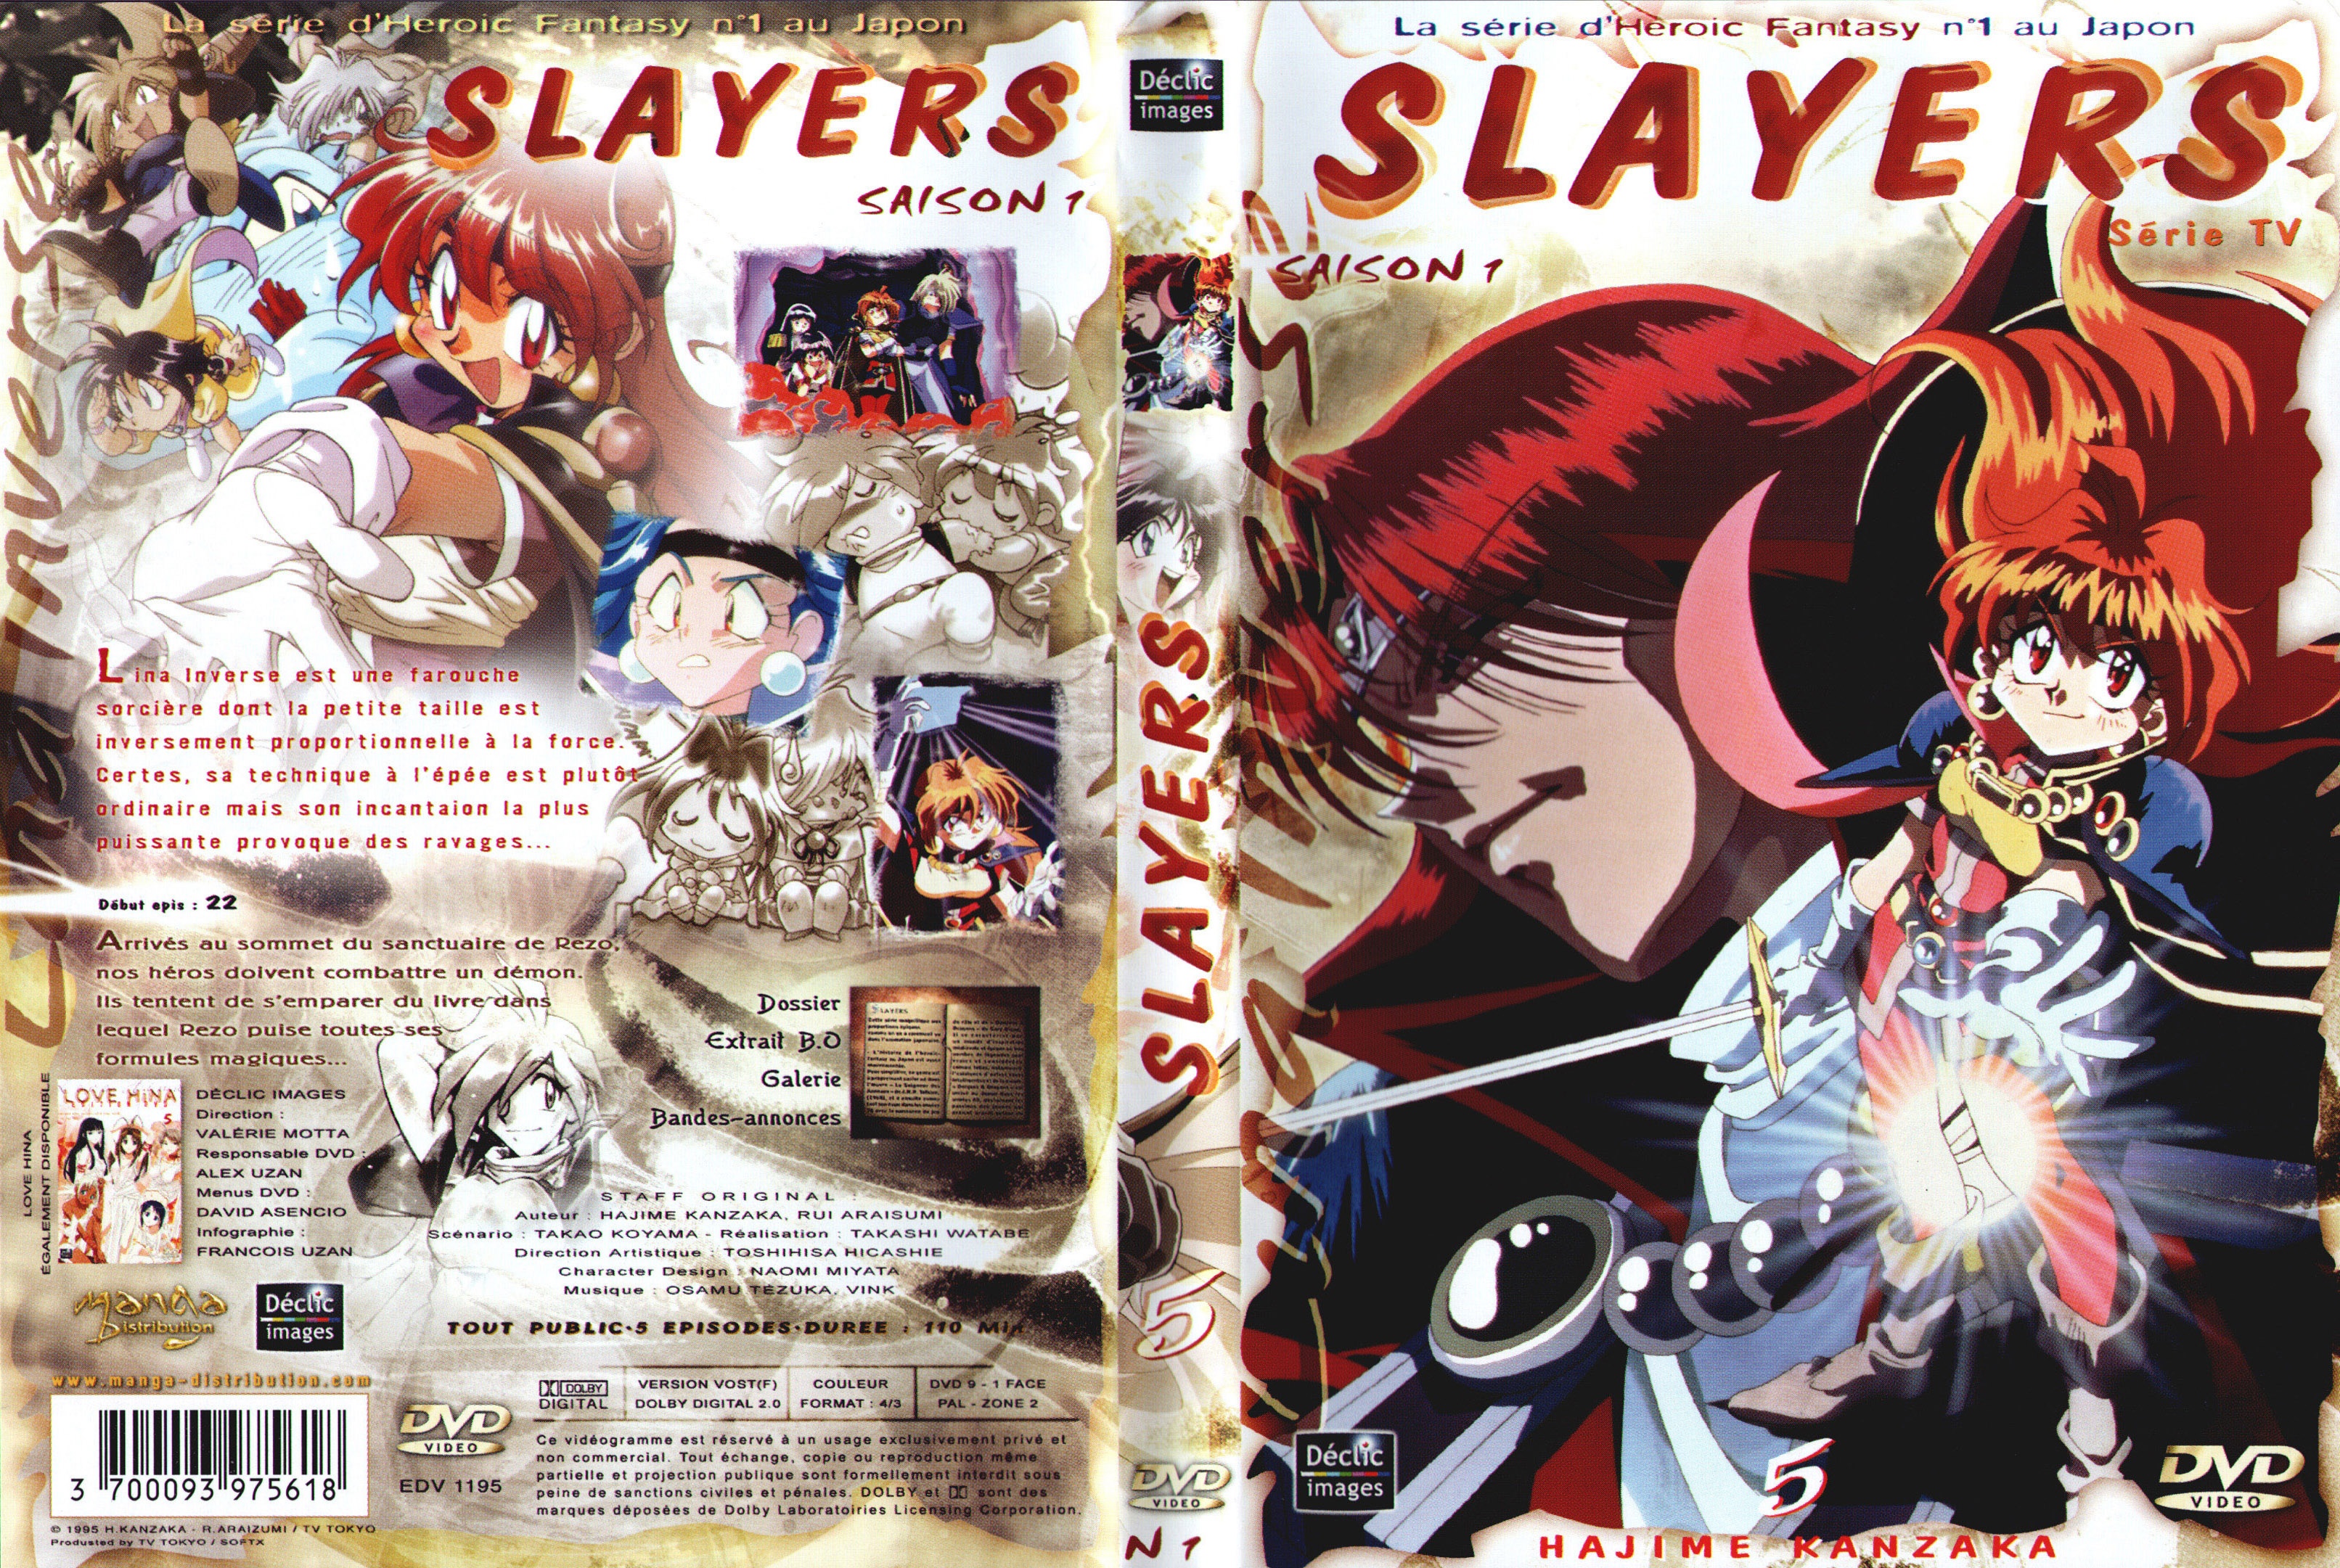 Jaquette DVD Slayers saison 1 DVD 5